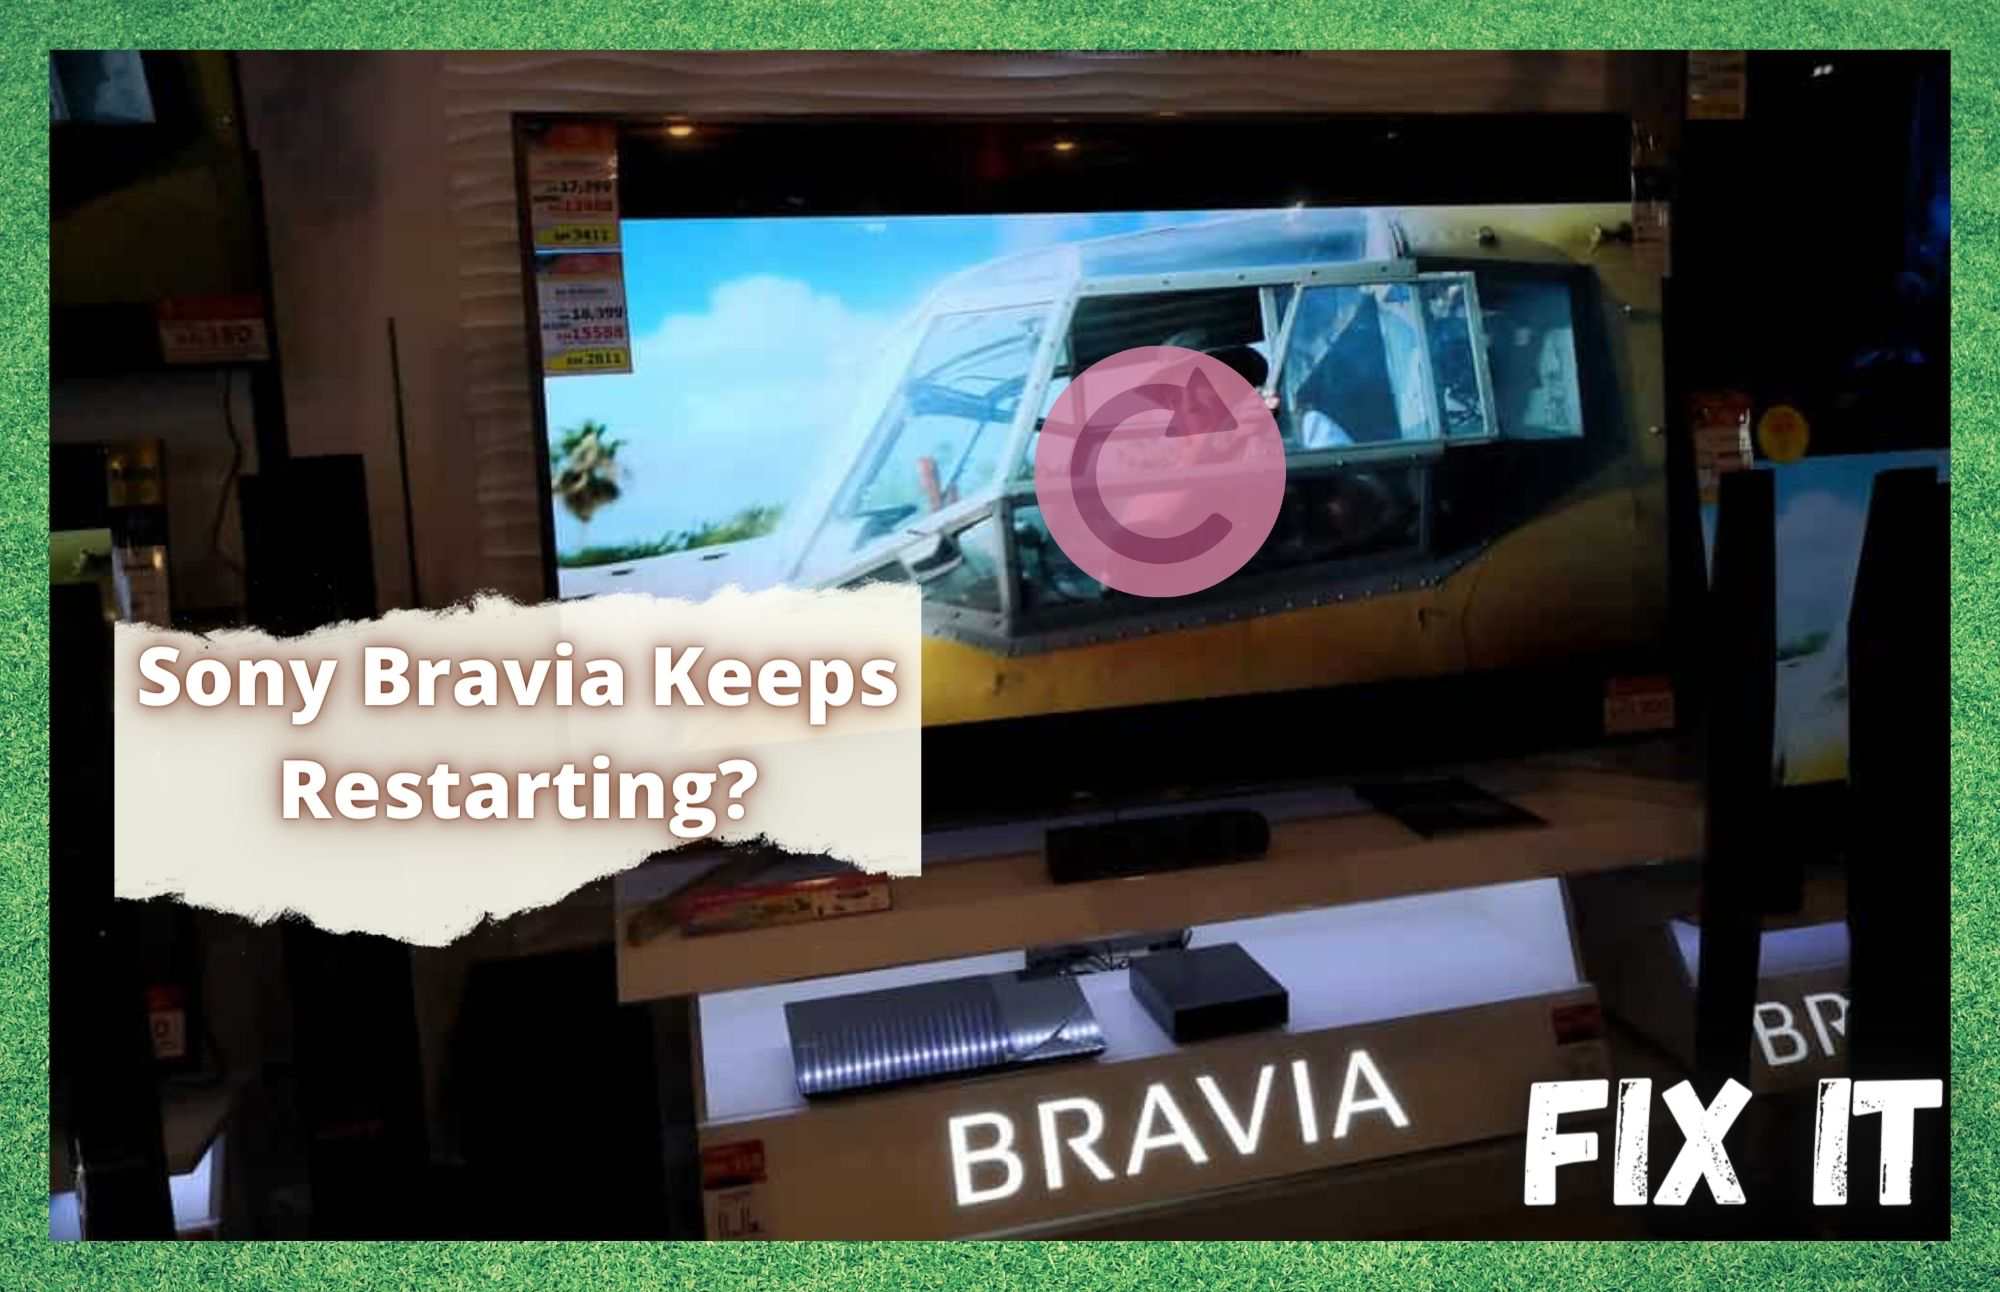 Sony Bravia Keeps Restarting